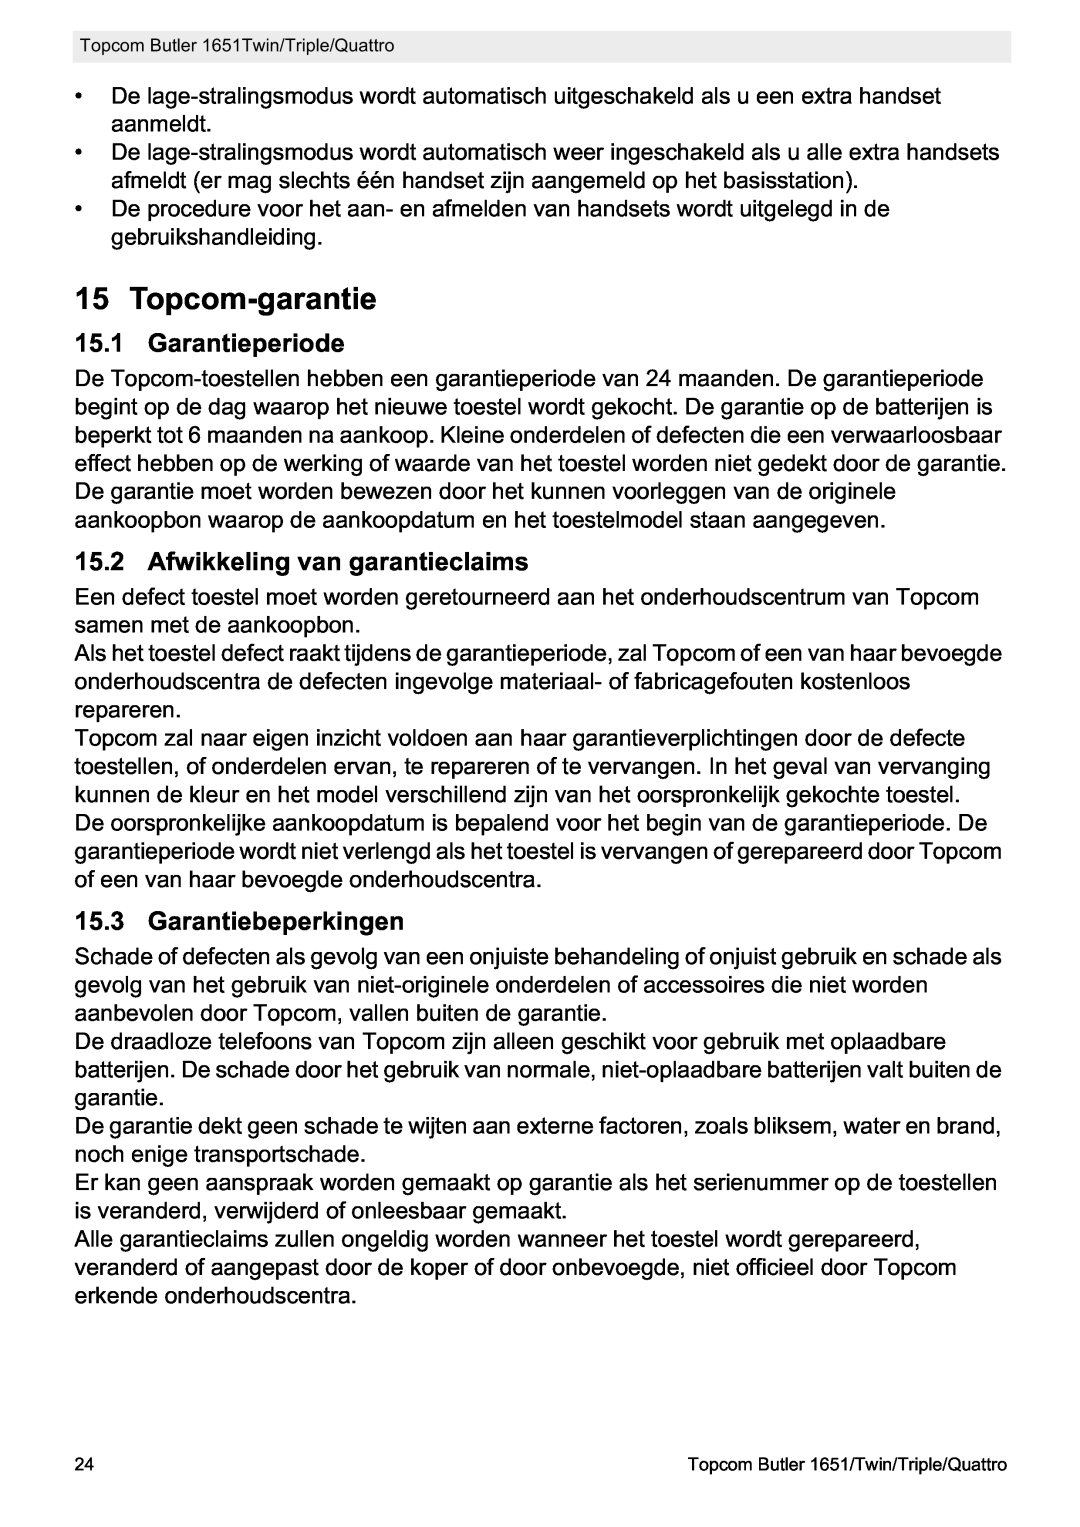 Topcom 1651 manual Topcom-garantie, Garantieperiode, Afwikkeling van garantieclaims, Garantiebeperkingen 